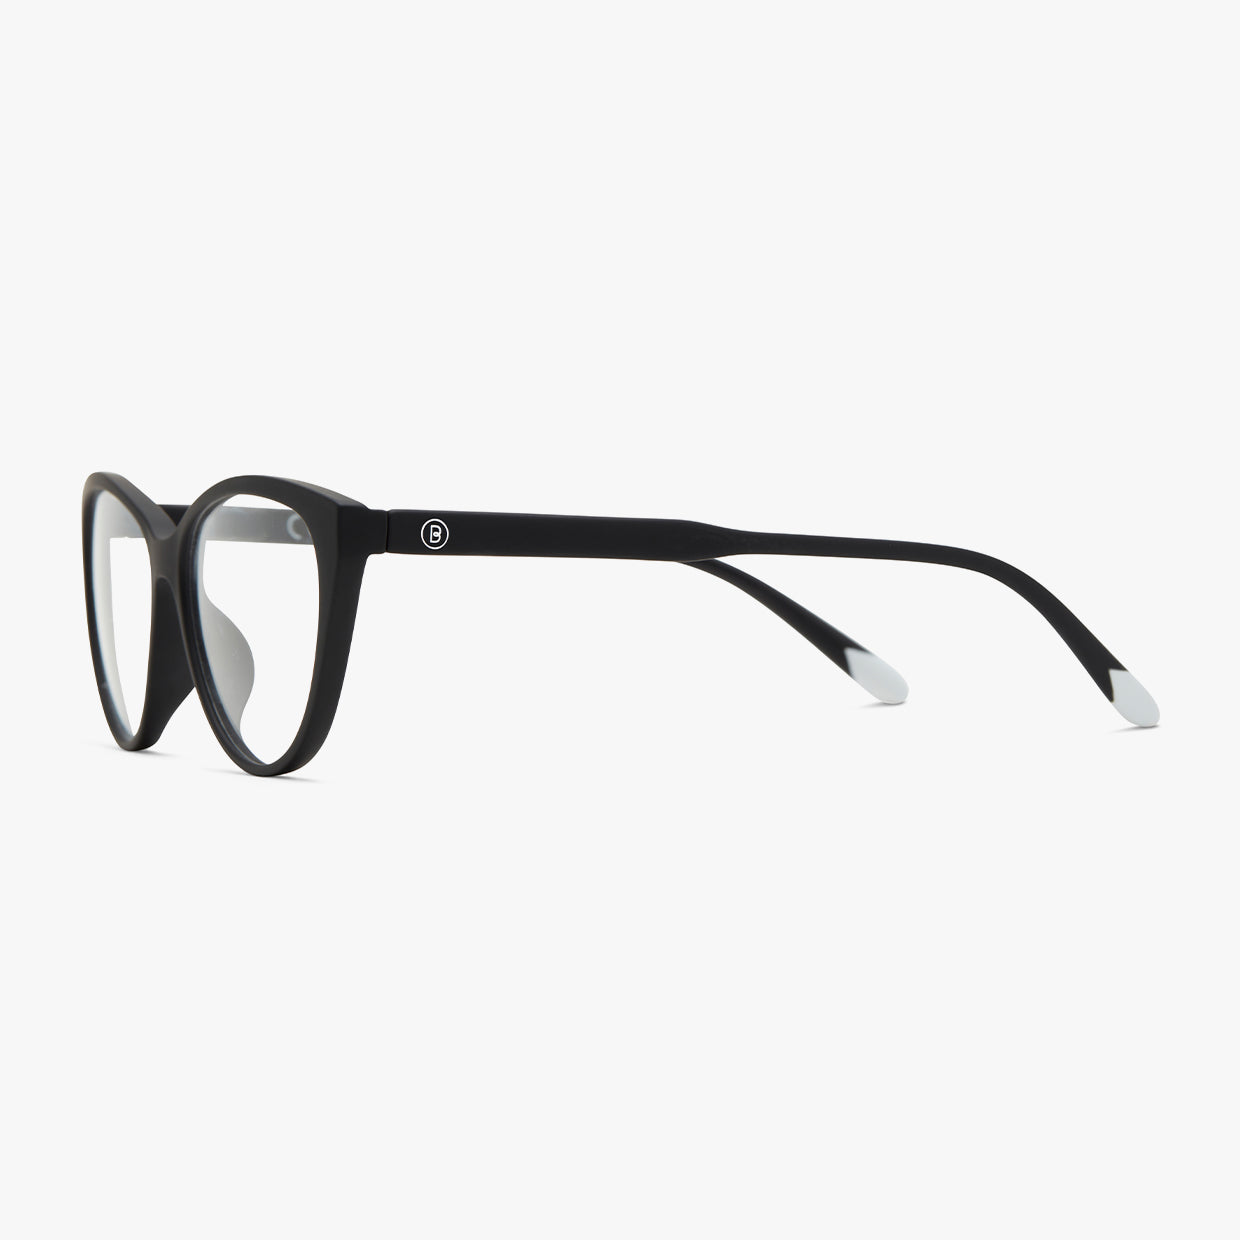 Astoria Blue Light Glasses - rectangular eyeglasses